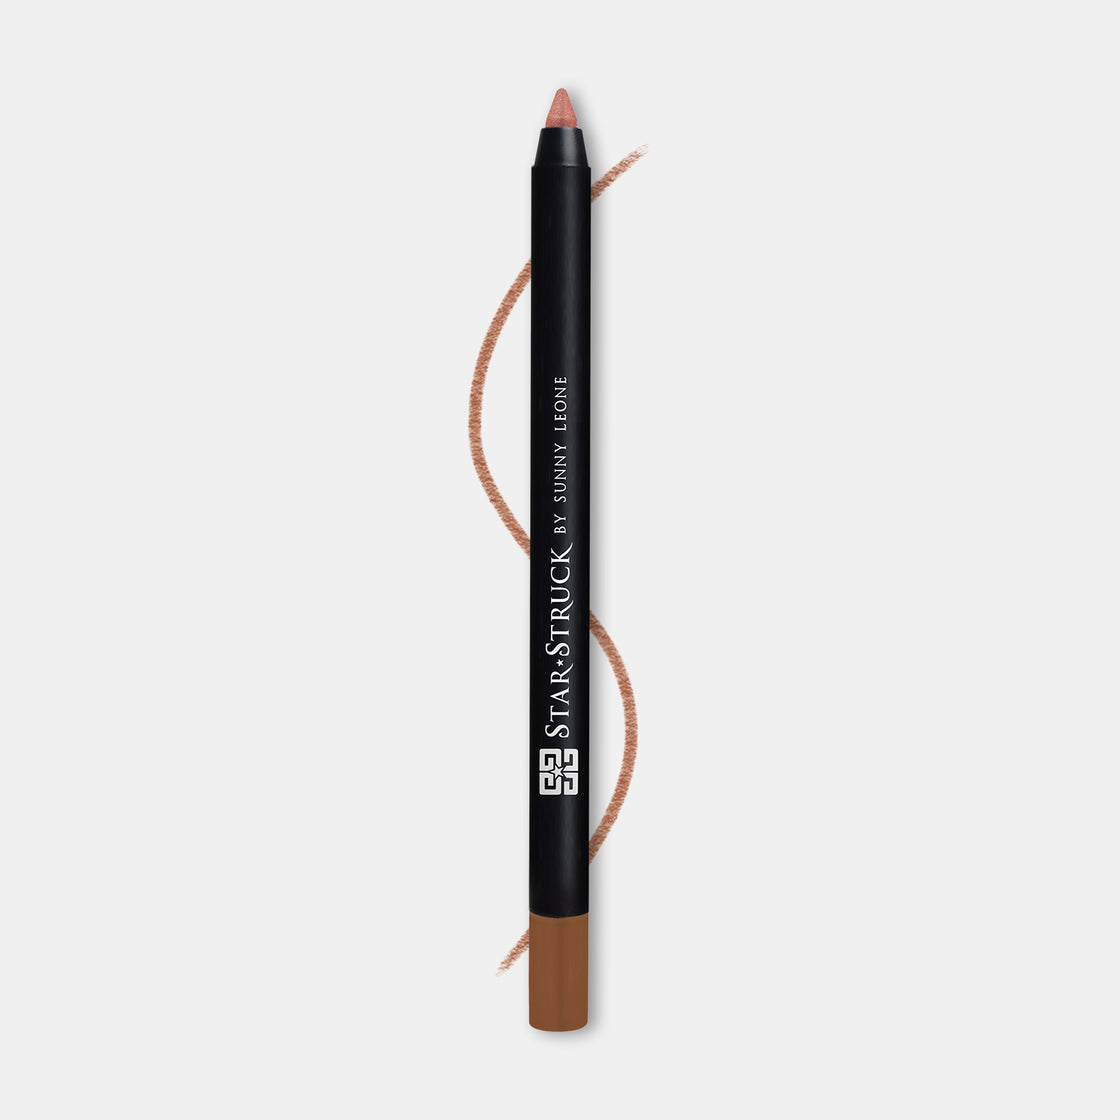 Bronze - Colored Eyeliner Pencil, Shimmer Brown | 1.2gms